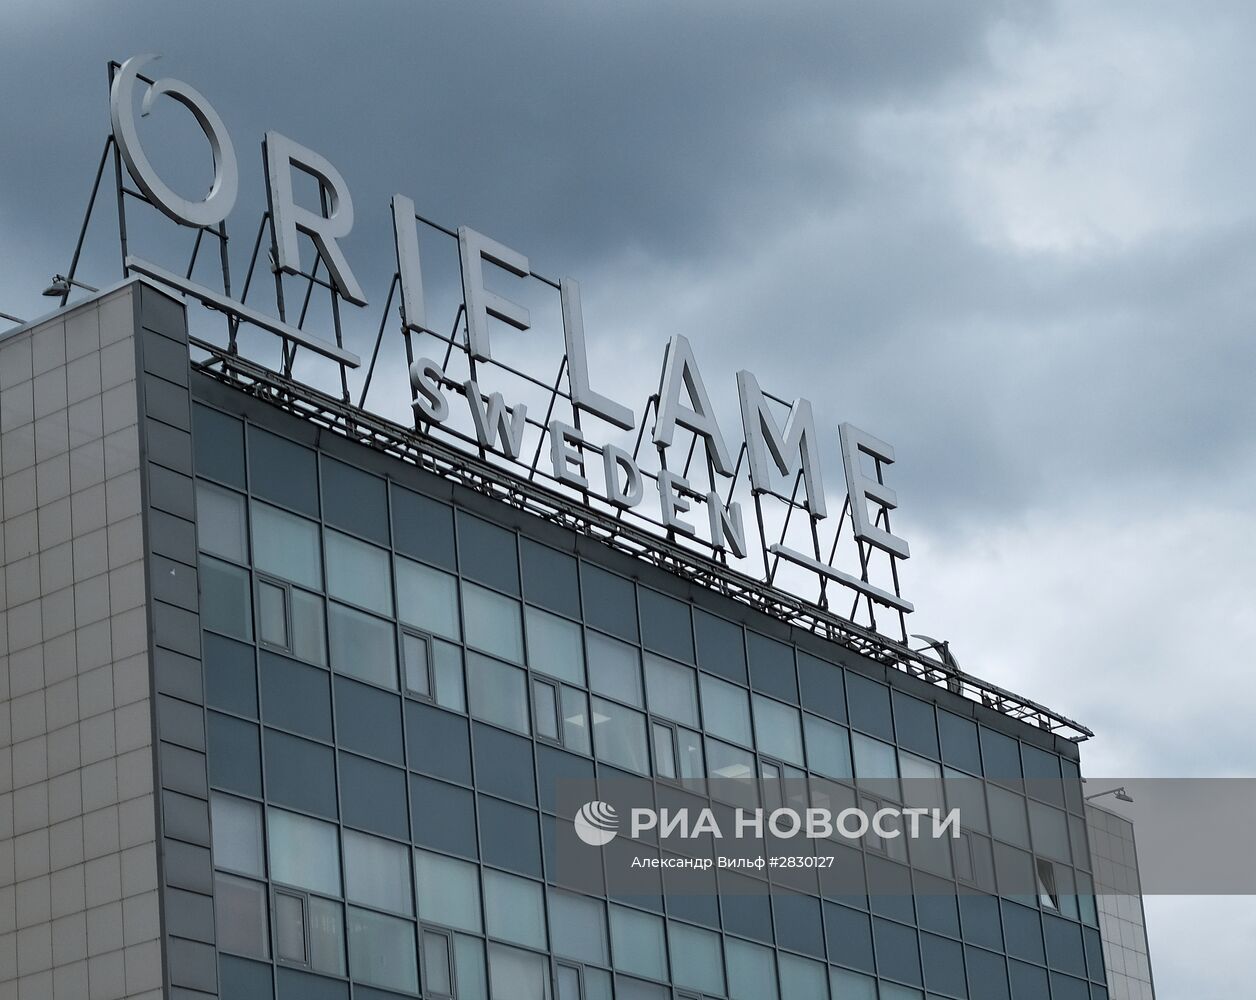 В московском офисе компании Oriflame проходят обыски